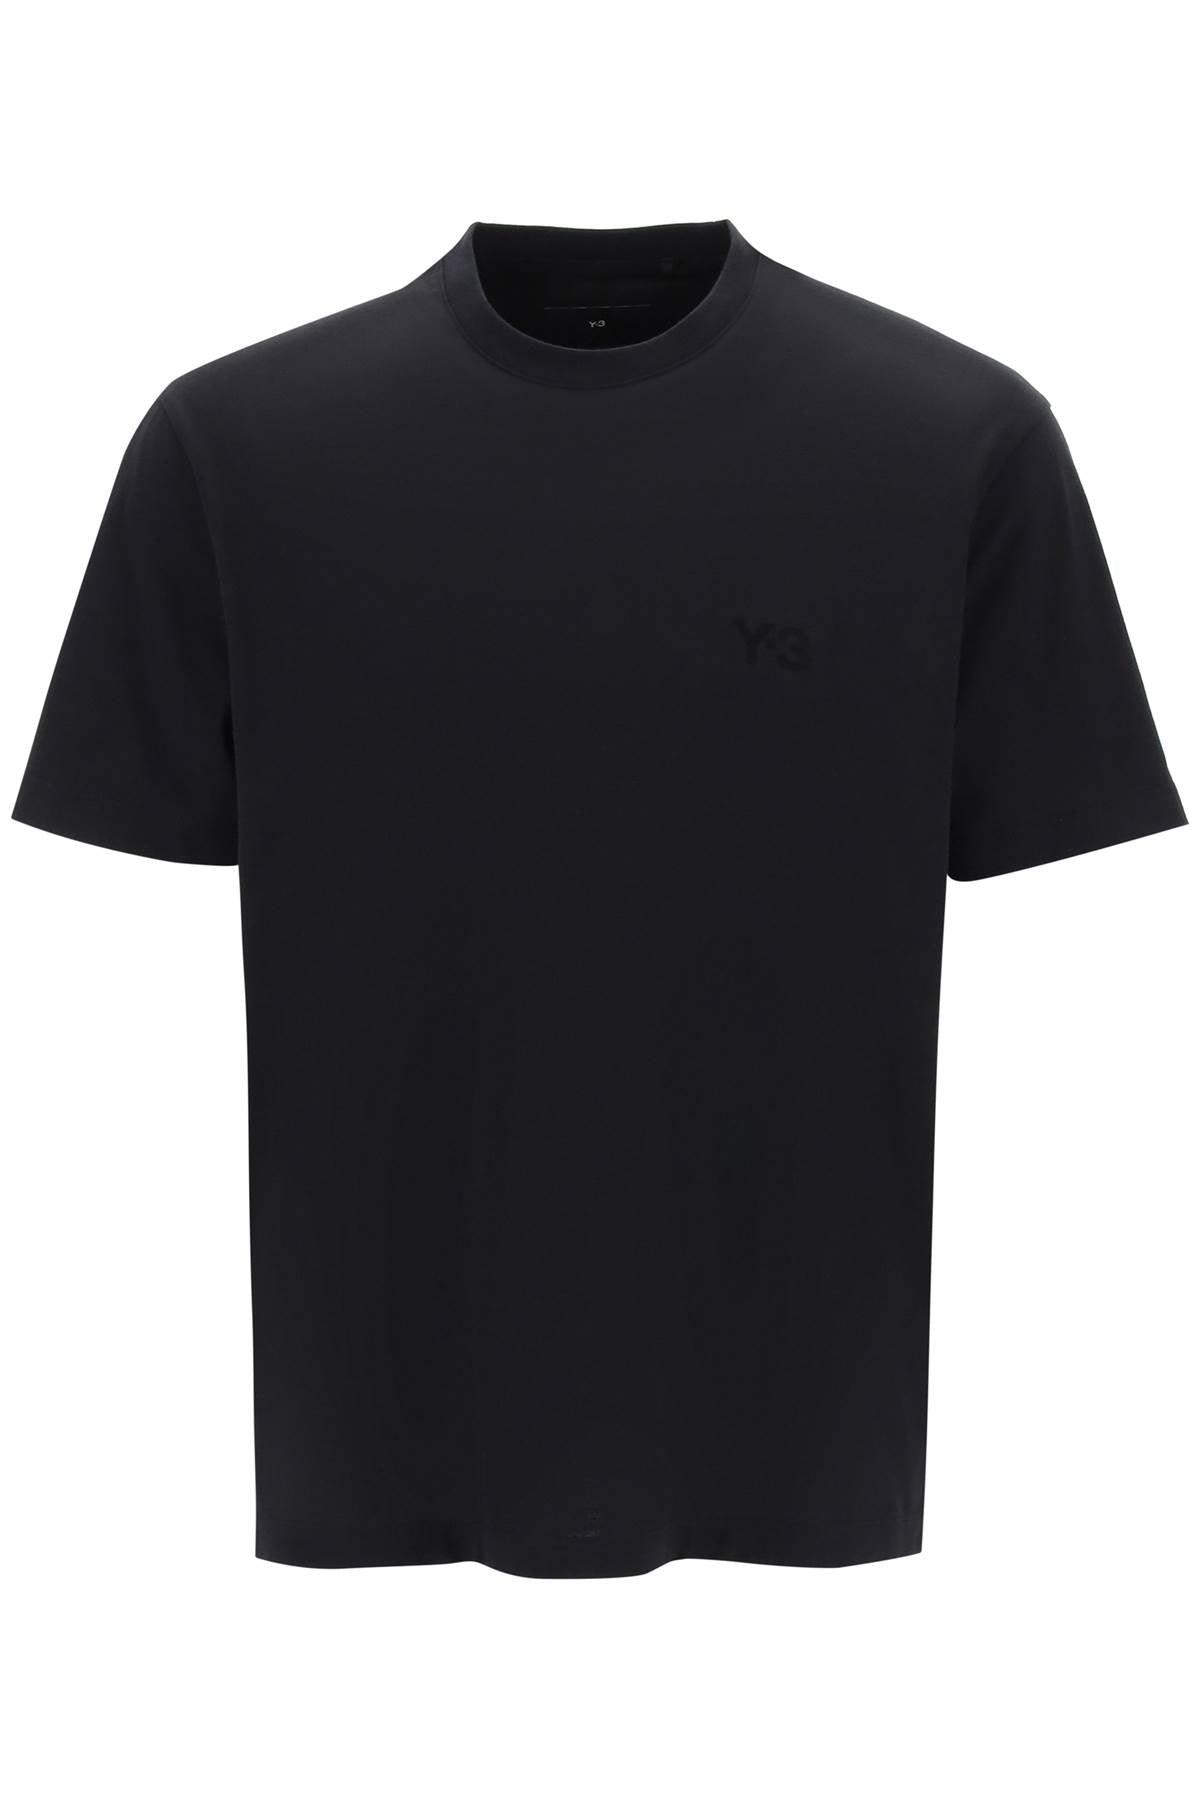 Y-3 t-shirt with tonal logo-Y-3-Urbanheer